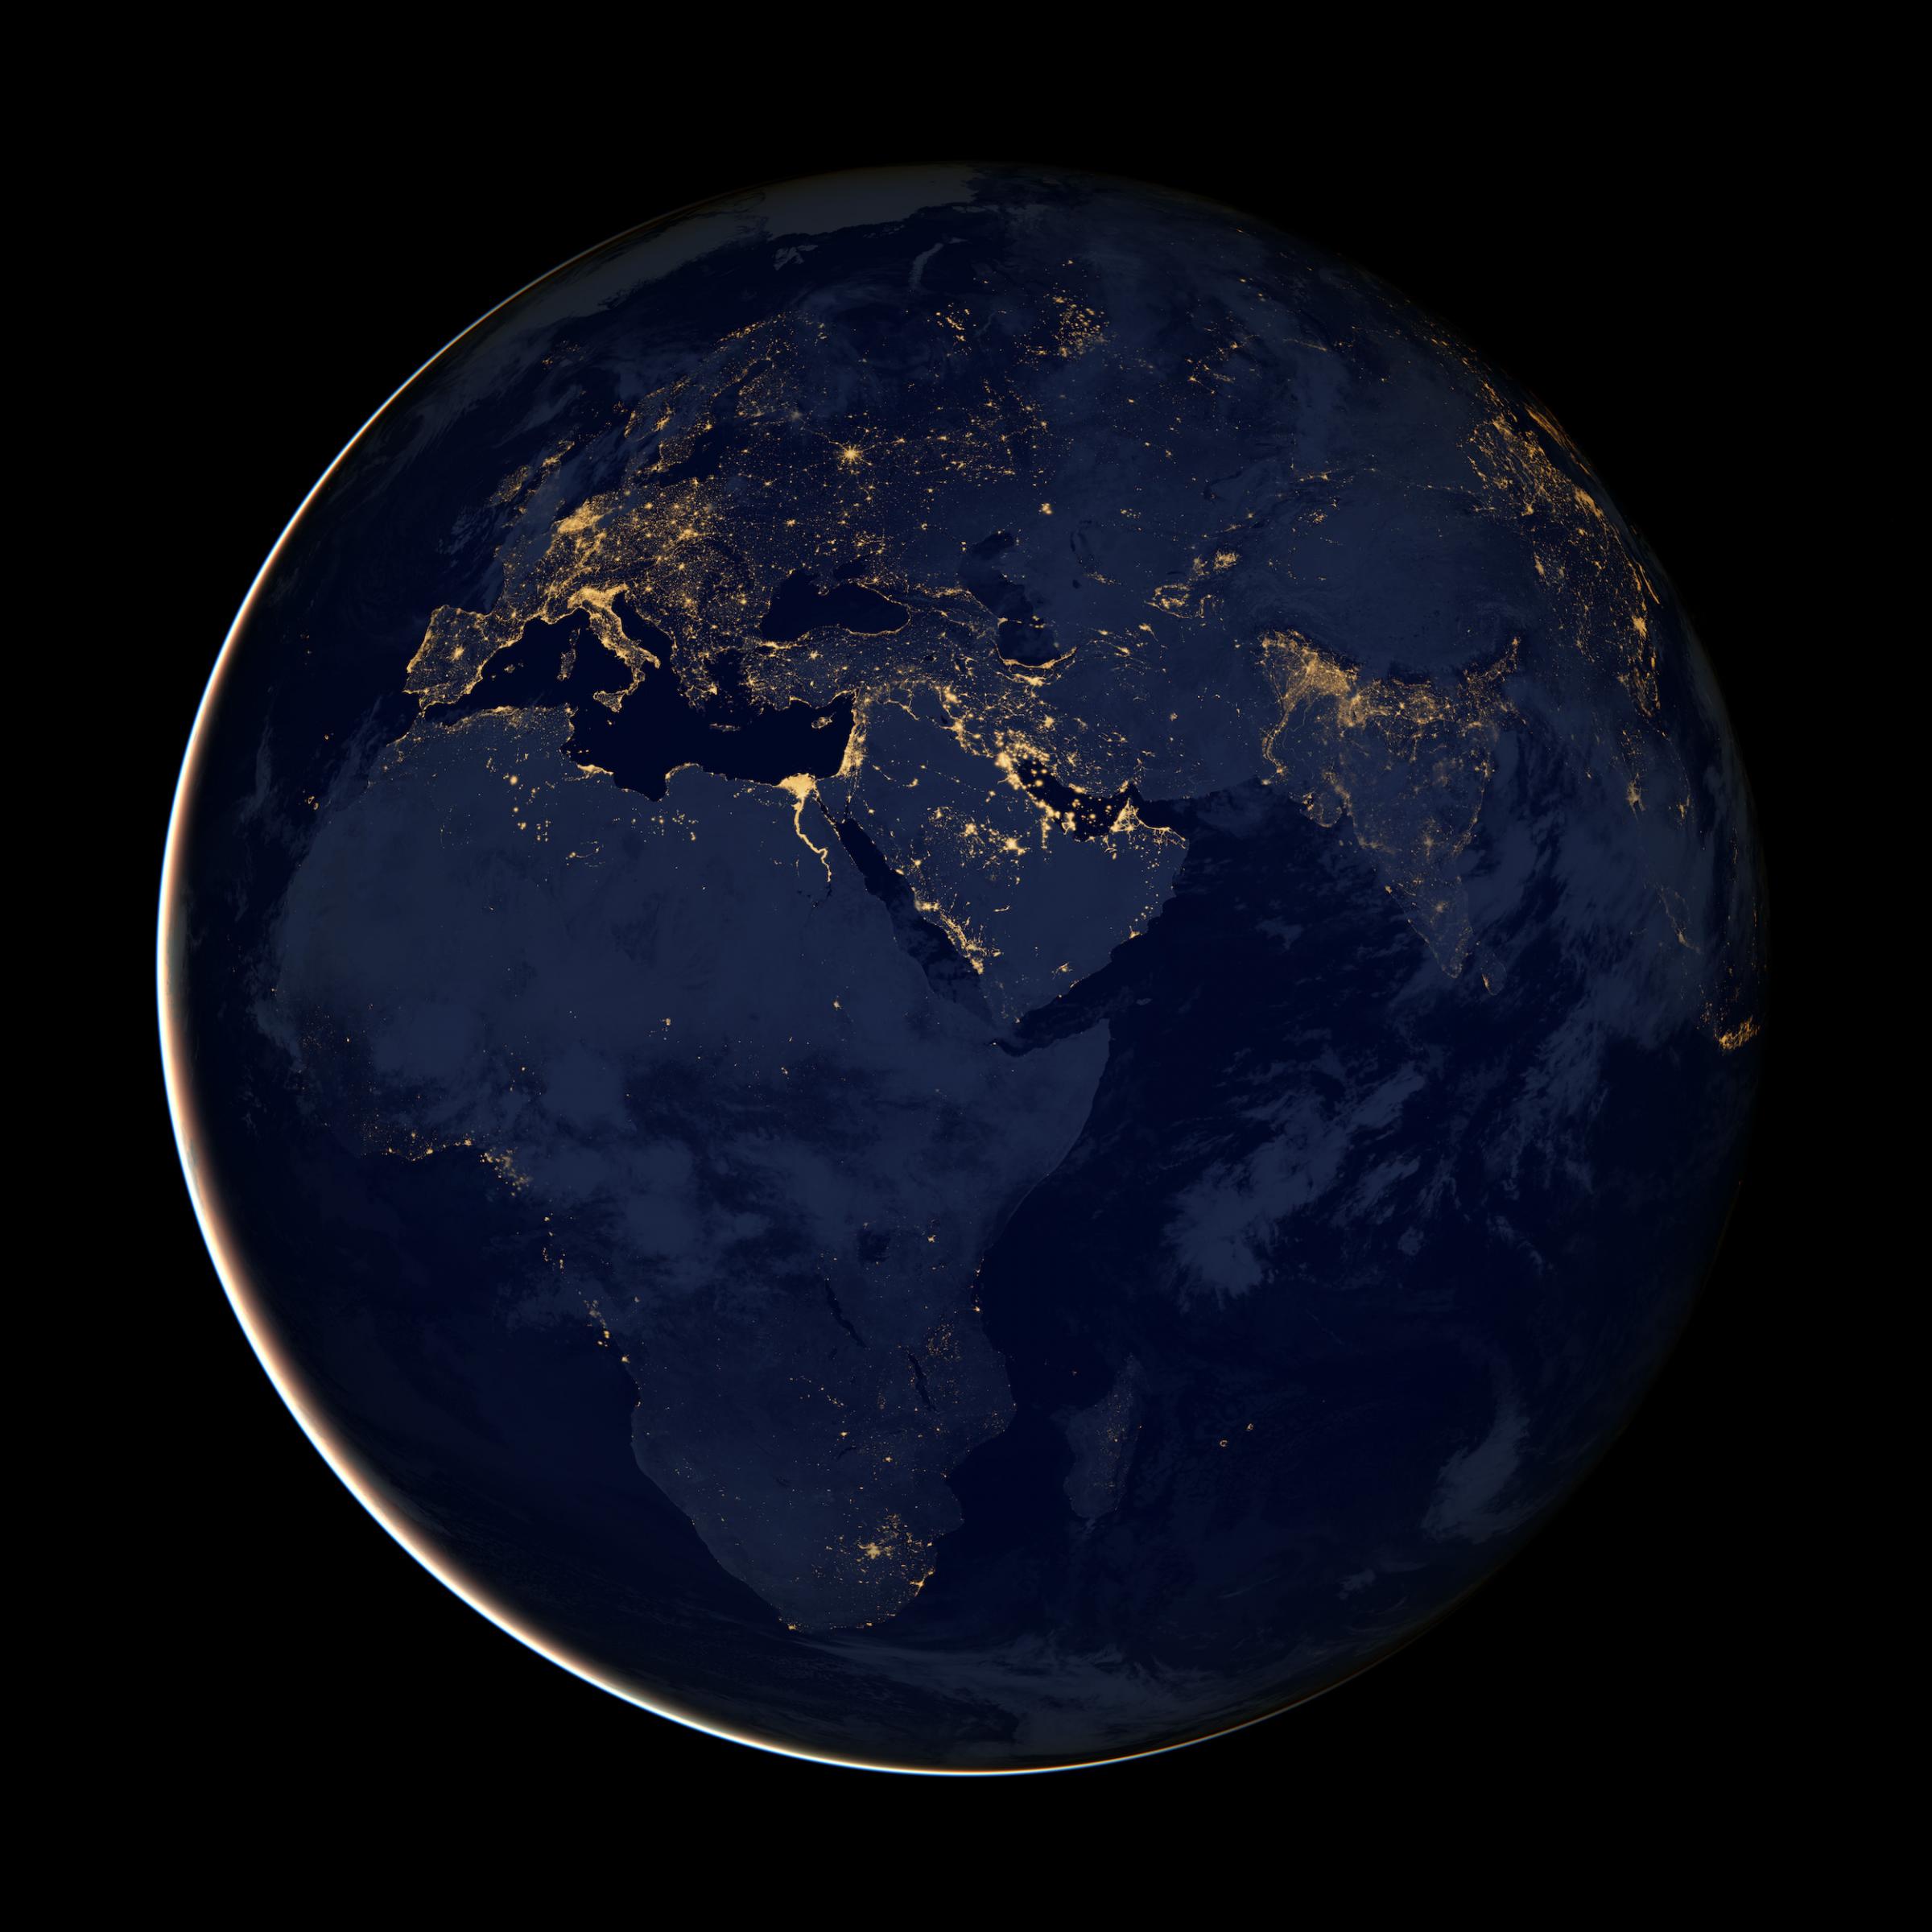 Die US-Raumfahrtagentur NASA hat aus Satellitenbildern ein Abbild der Erde bei Nacht geschaffen. Europa strahlt in weiten Teilen in hellem Licht, während Afrika nur von wenigen hellen Punkten gekennzeichnet ist.